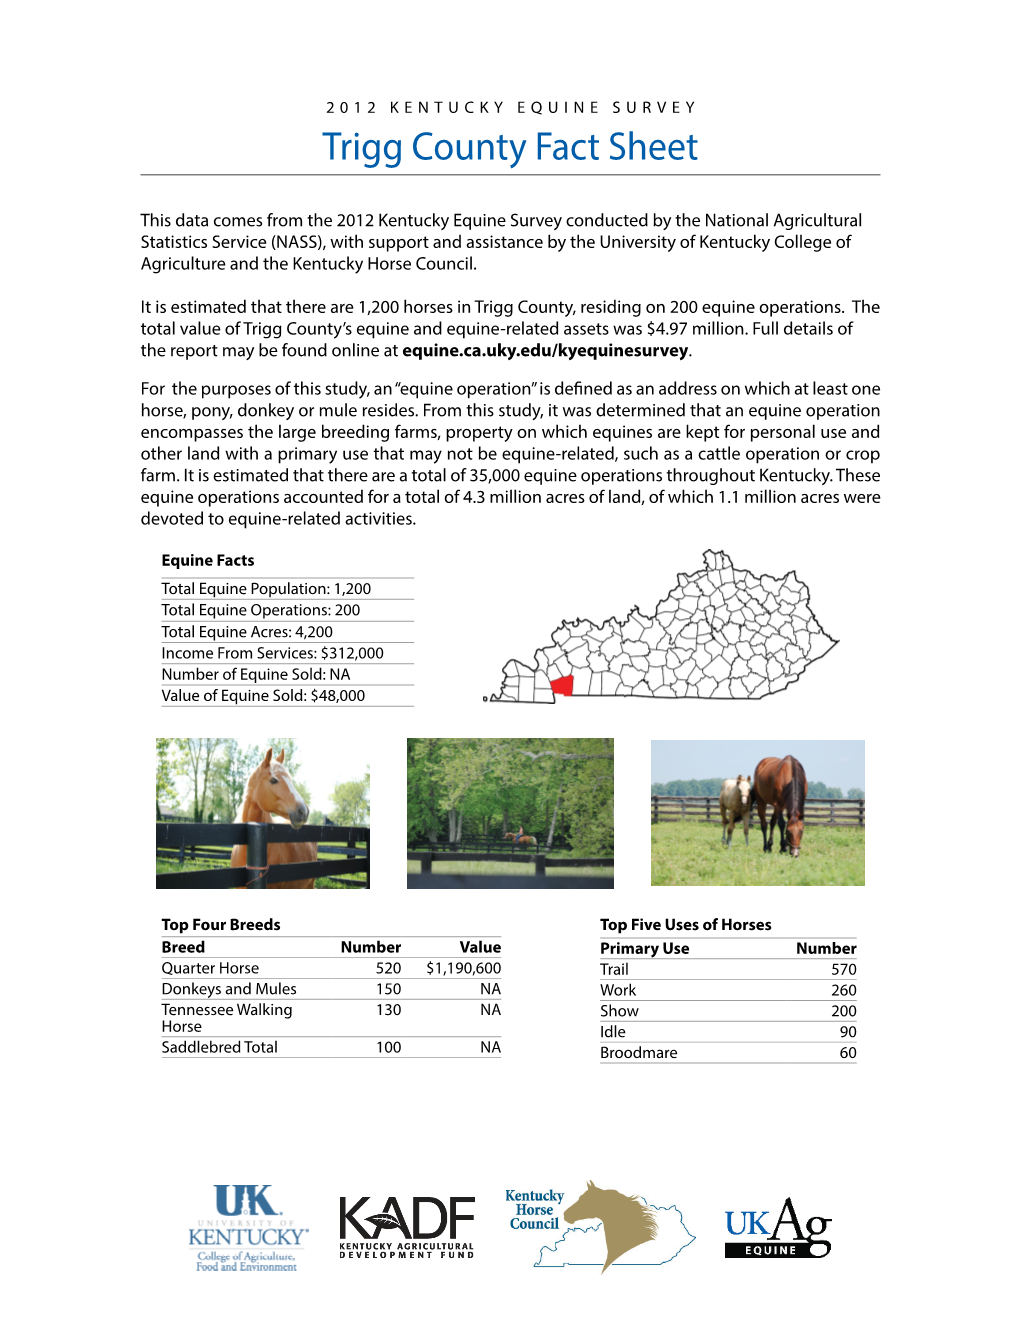 Trigg County Fact Sheet